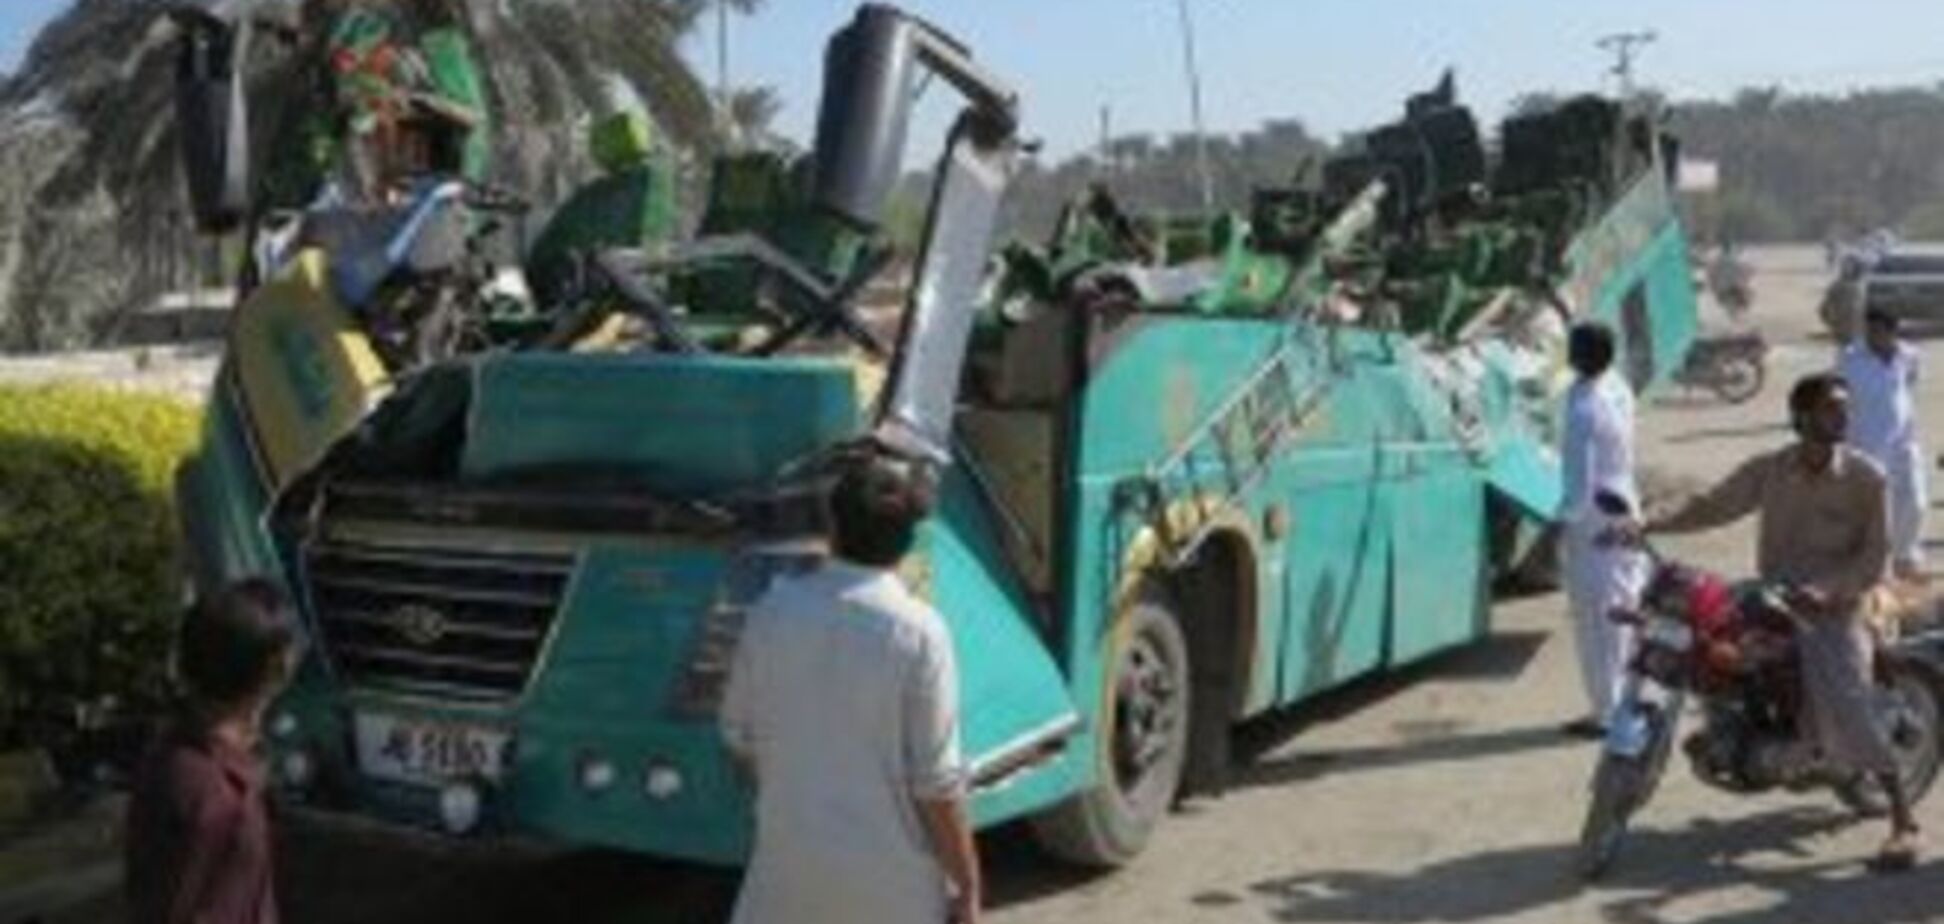 На месте расстрела автобуса в Пакистане нашли листовки 'Исламского государства'